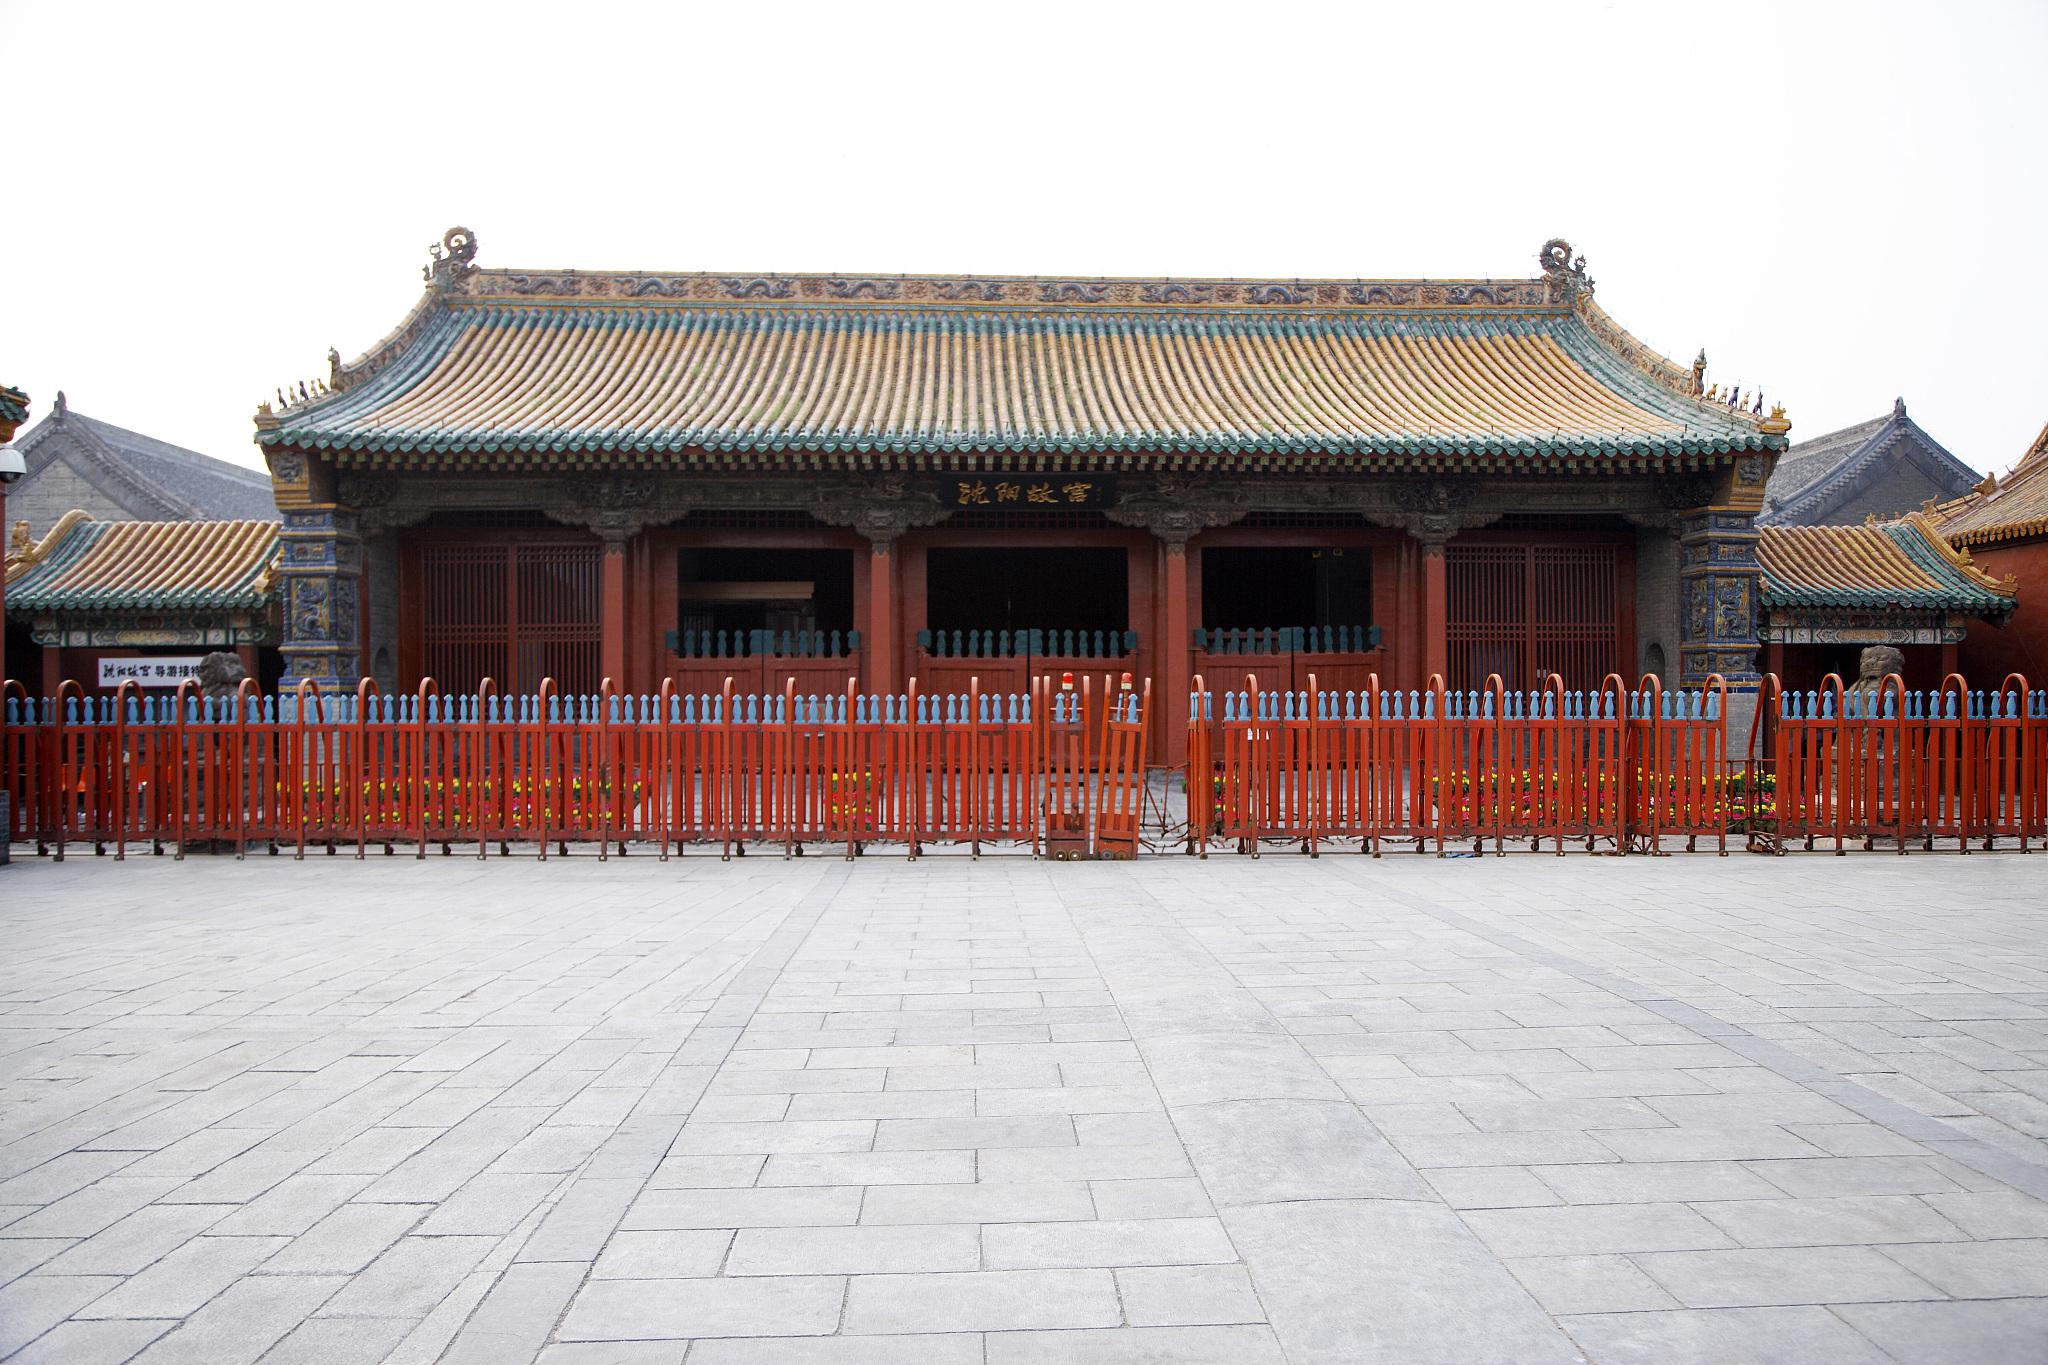 沈阳故宫清宁宫,探寻历史文化魅力 沈阳故宫,作为中国现存最古老的